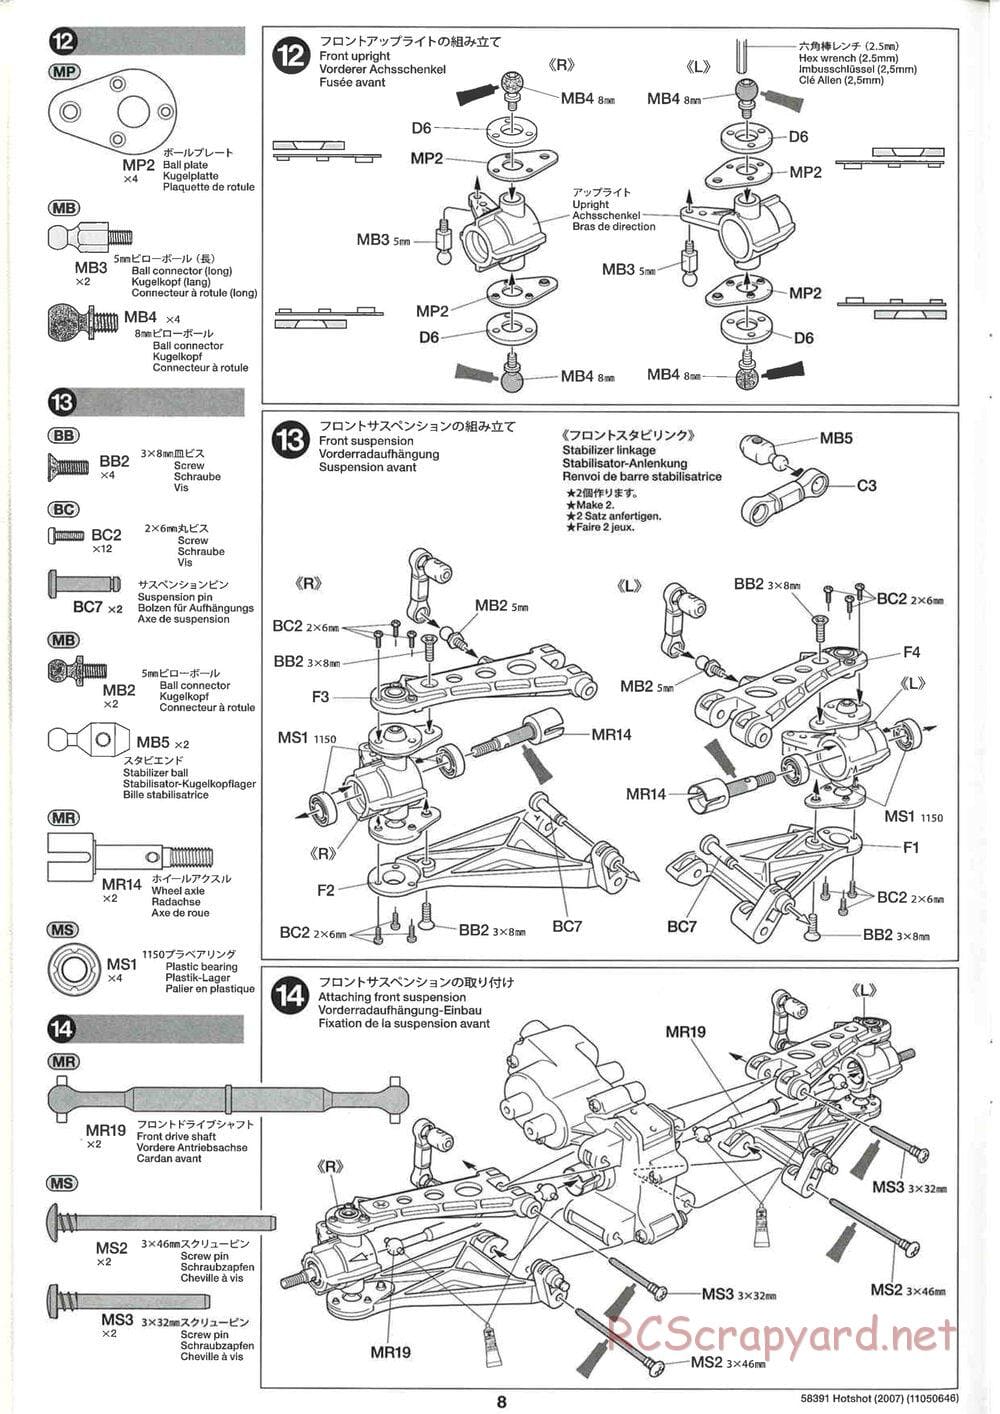 Tamiya - Hotshot - 2007 - HS Chassis - Manual - Page 8